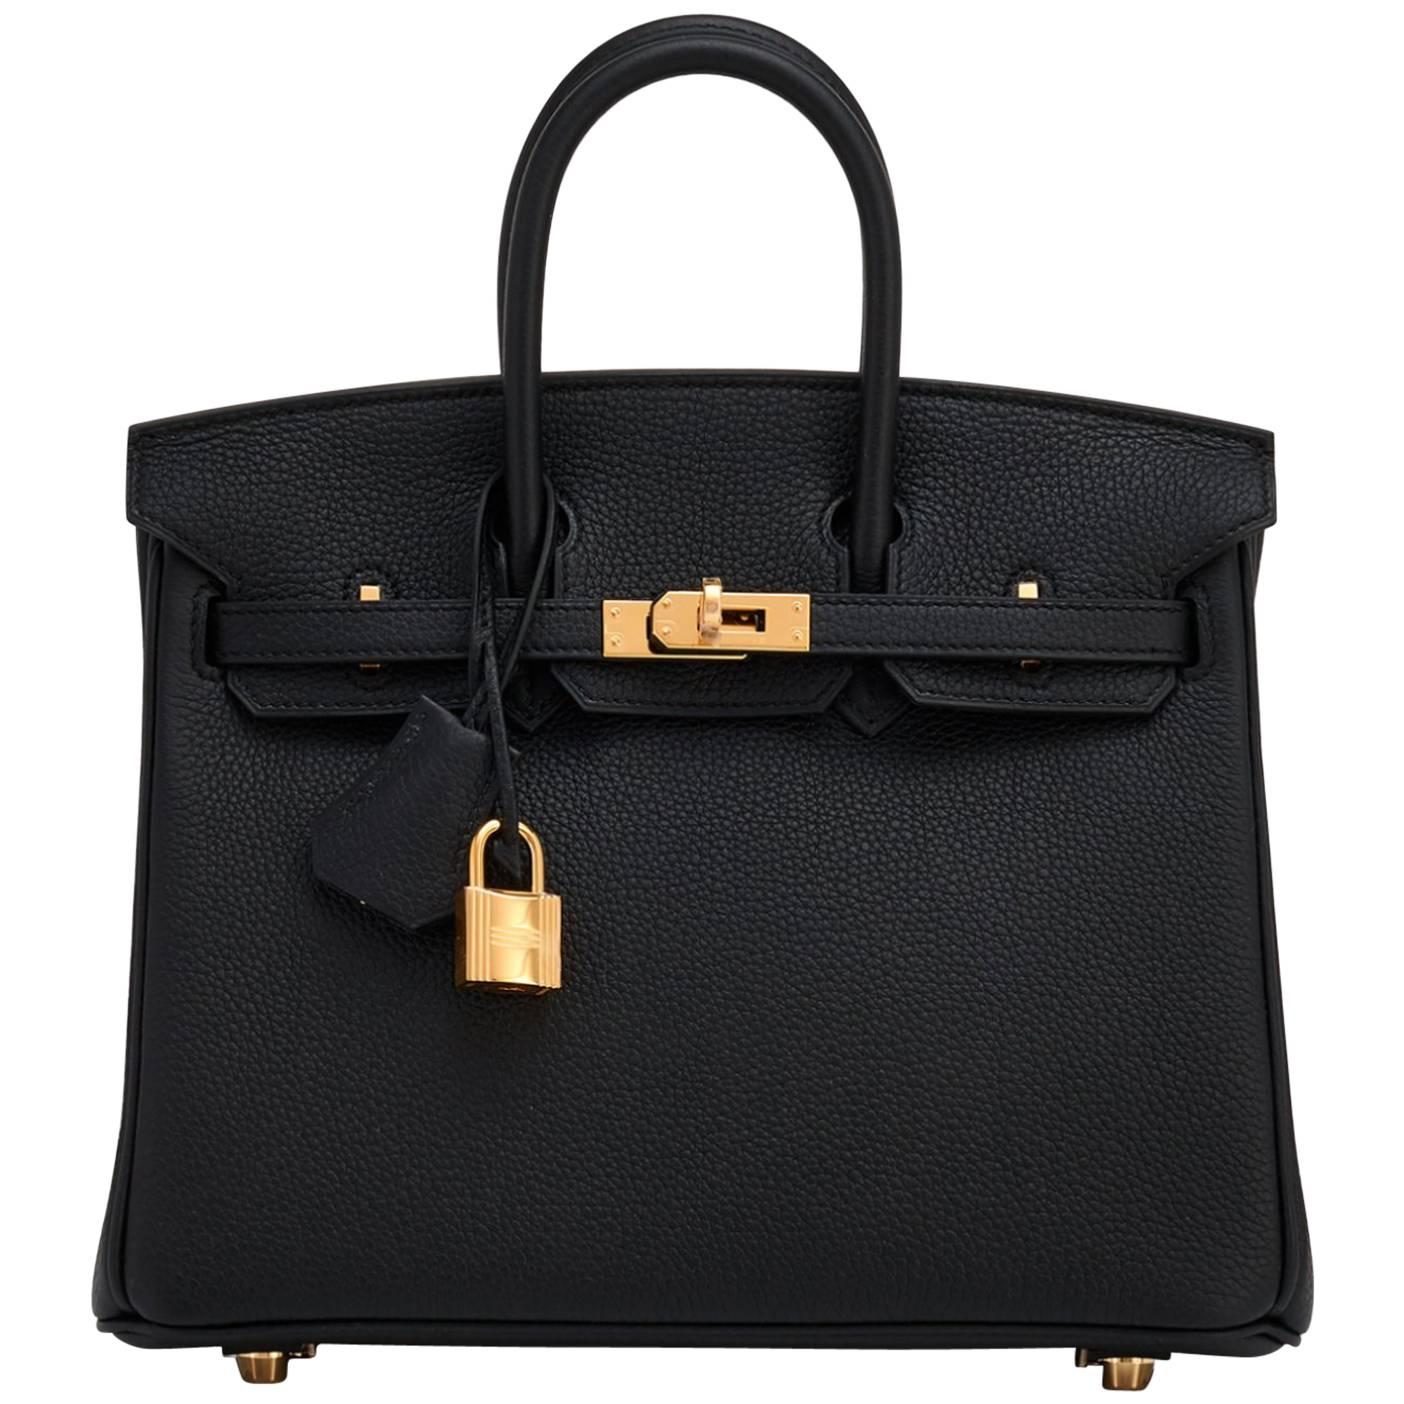 Hermes Birkin 25cm Black Togo Bag Gold Hardware 